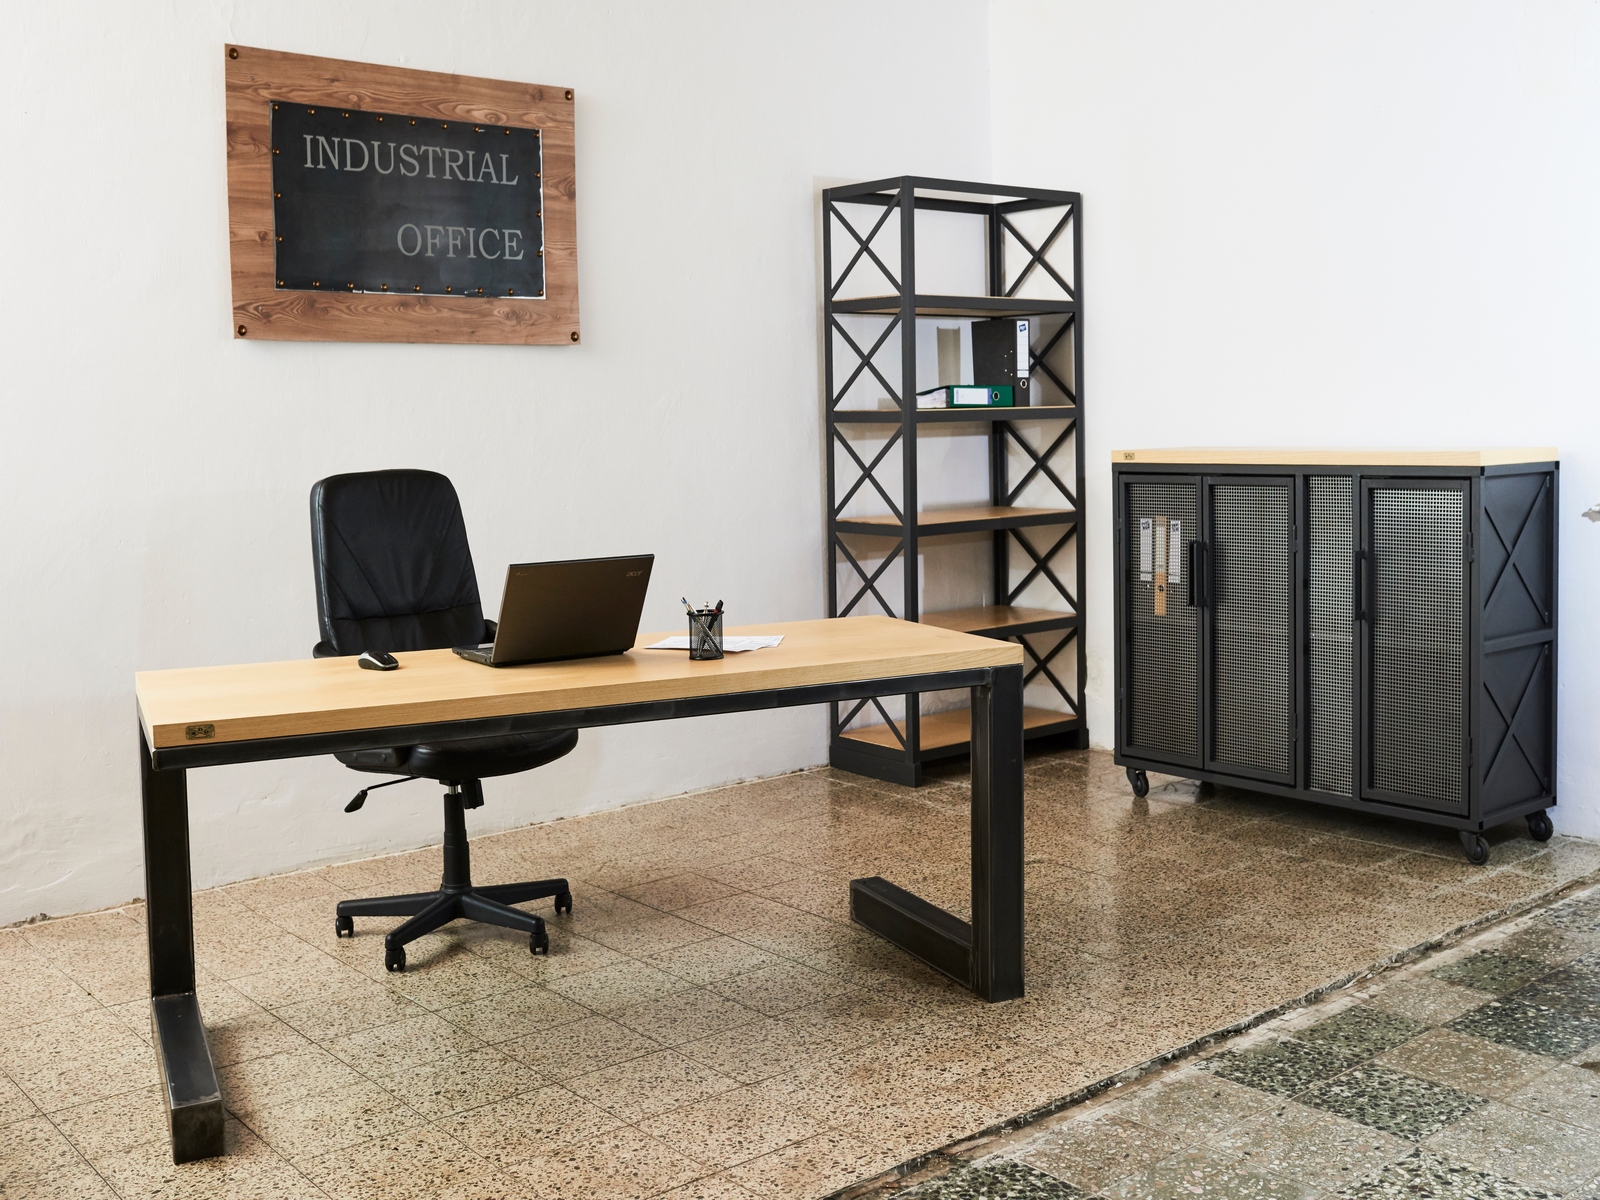 Industriální vybavení domácí kaceláře - Steel Design Office